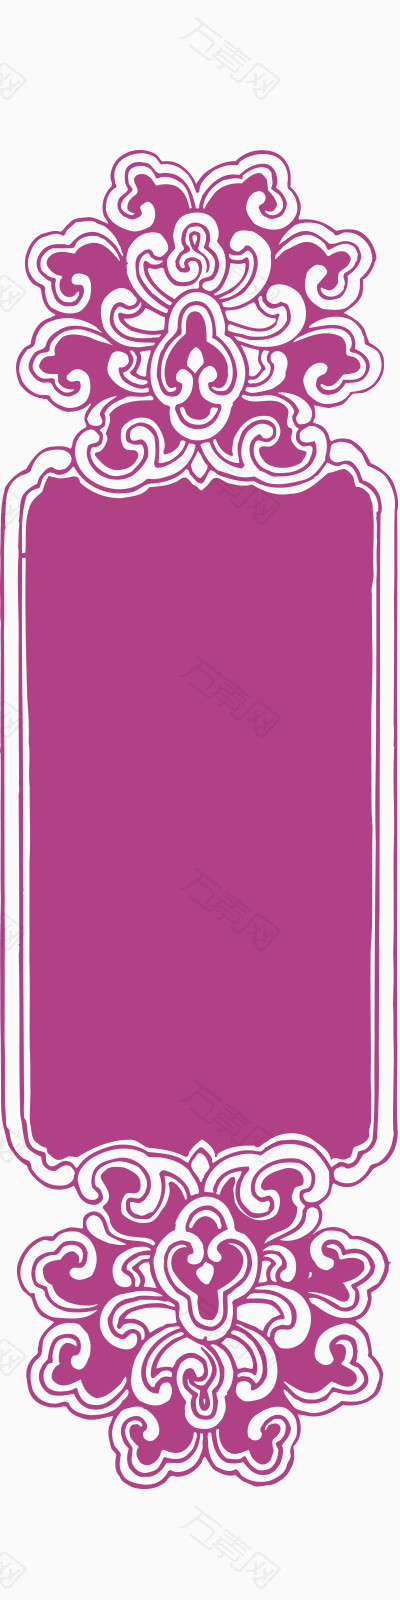 淡紫色花纹方框